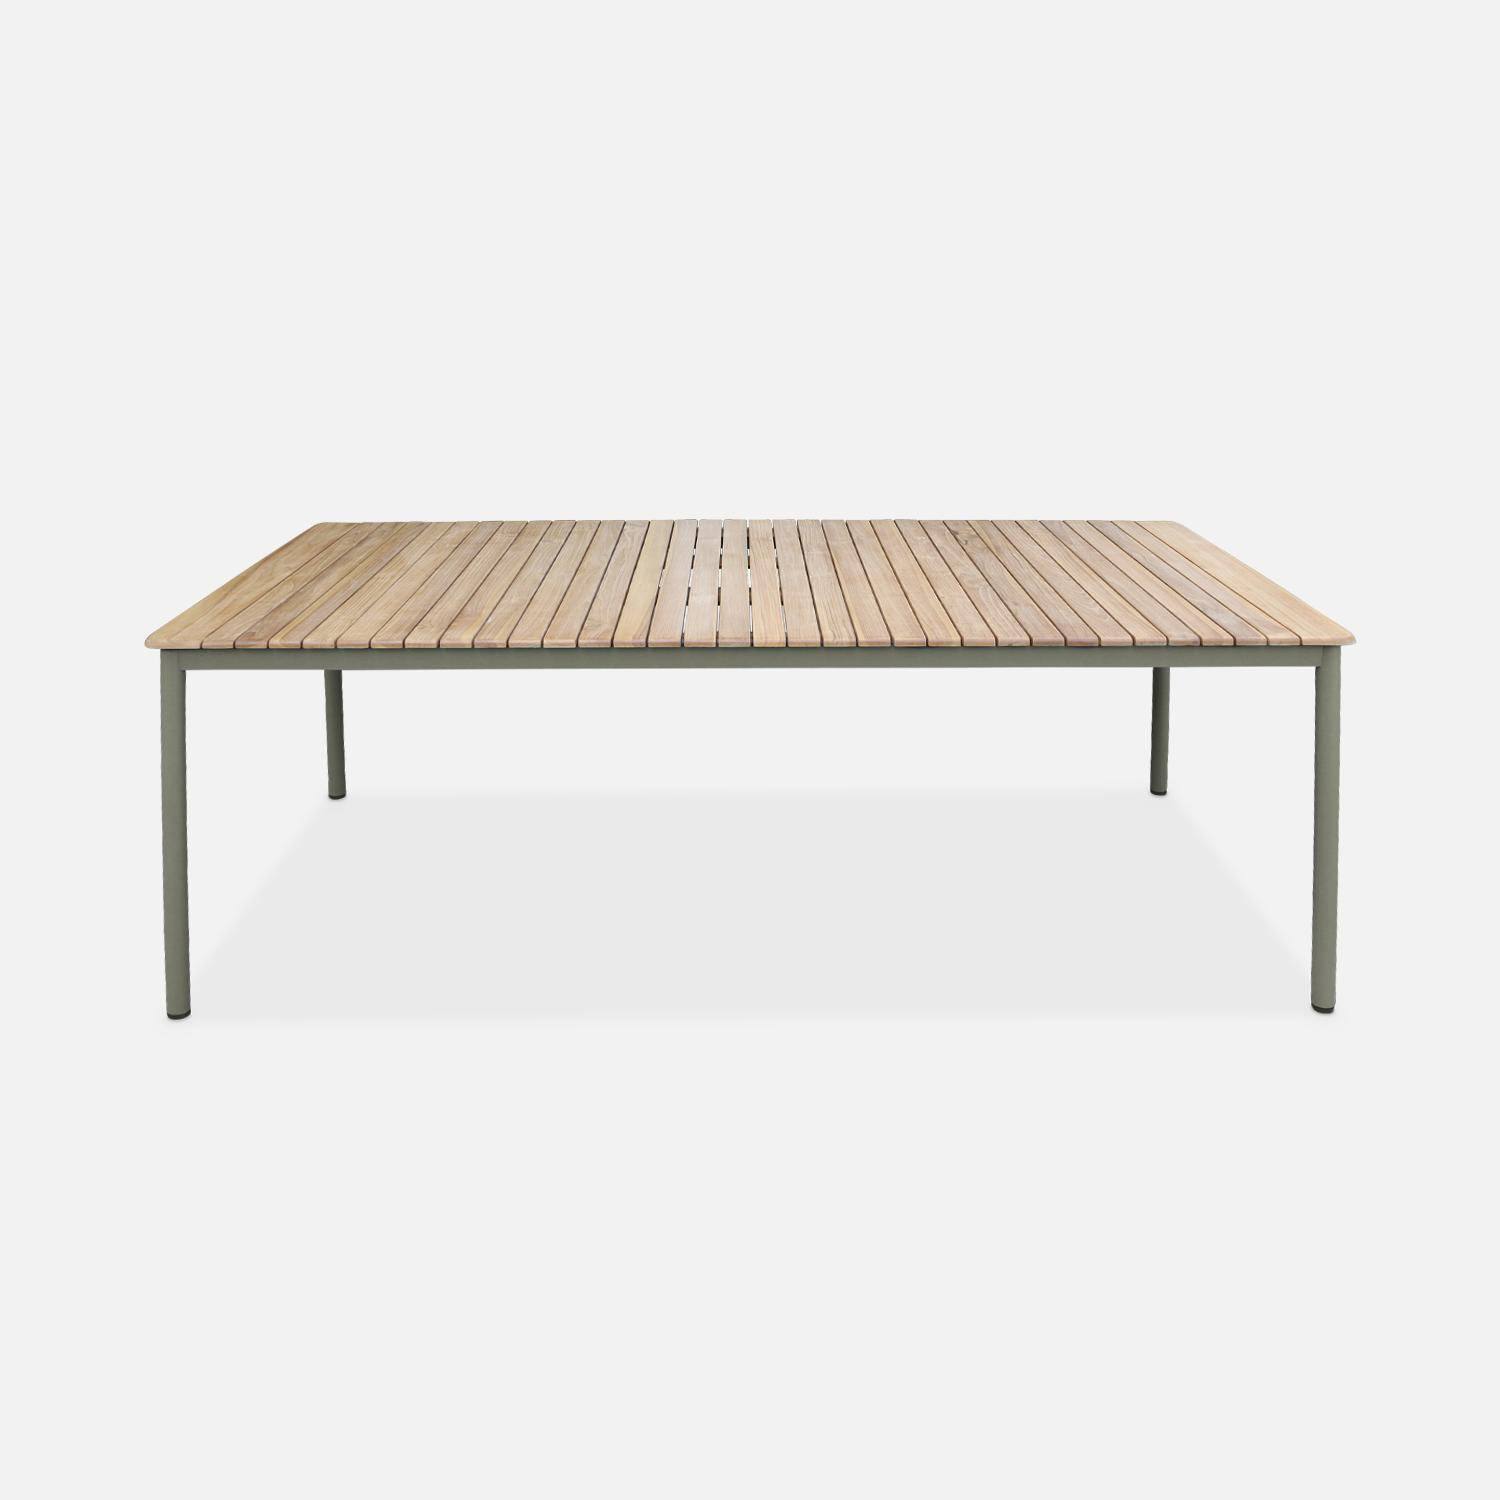 Gartentisch aus Teakholz, 210 x 100 cm, Gestell aus rostfreiem Stahl, salbeigrün , 8 Personen - Gili Photo2